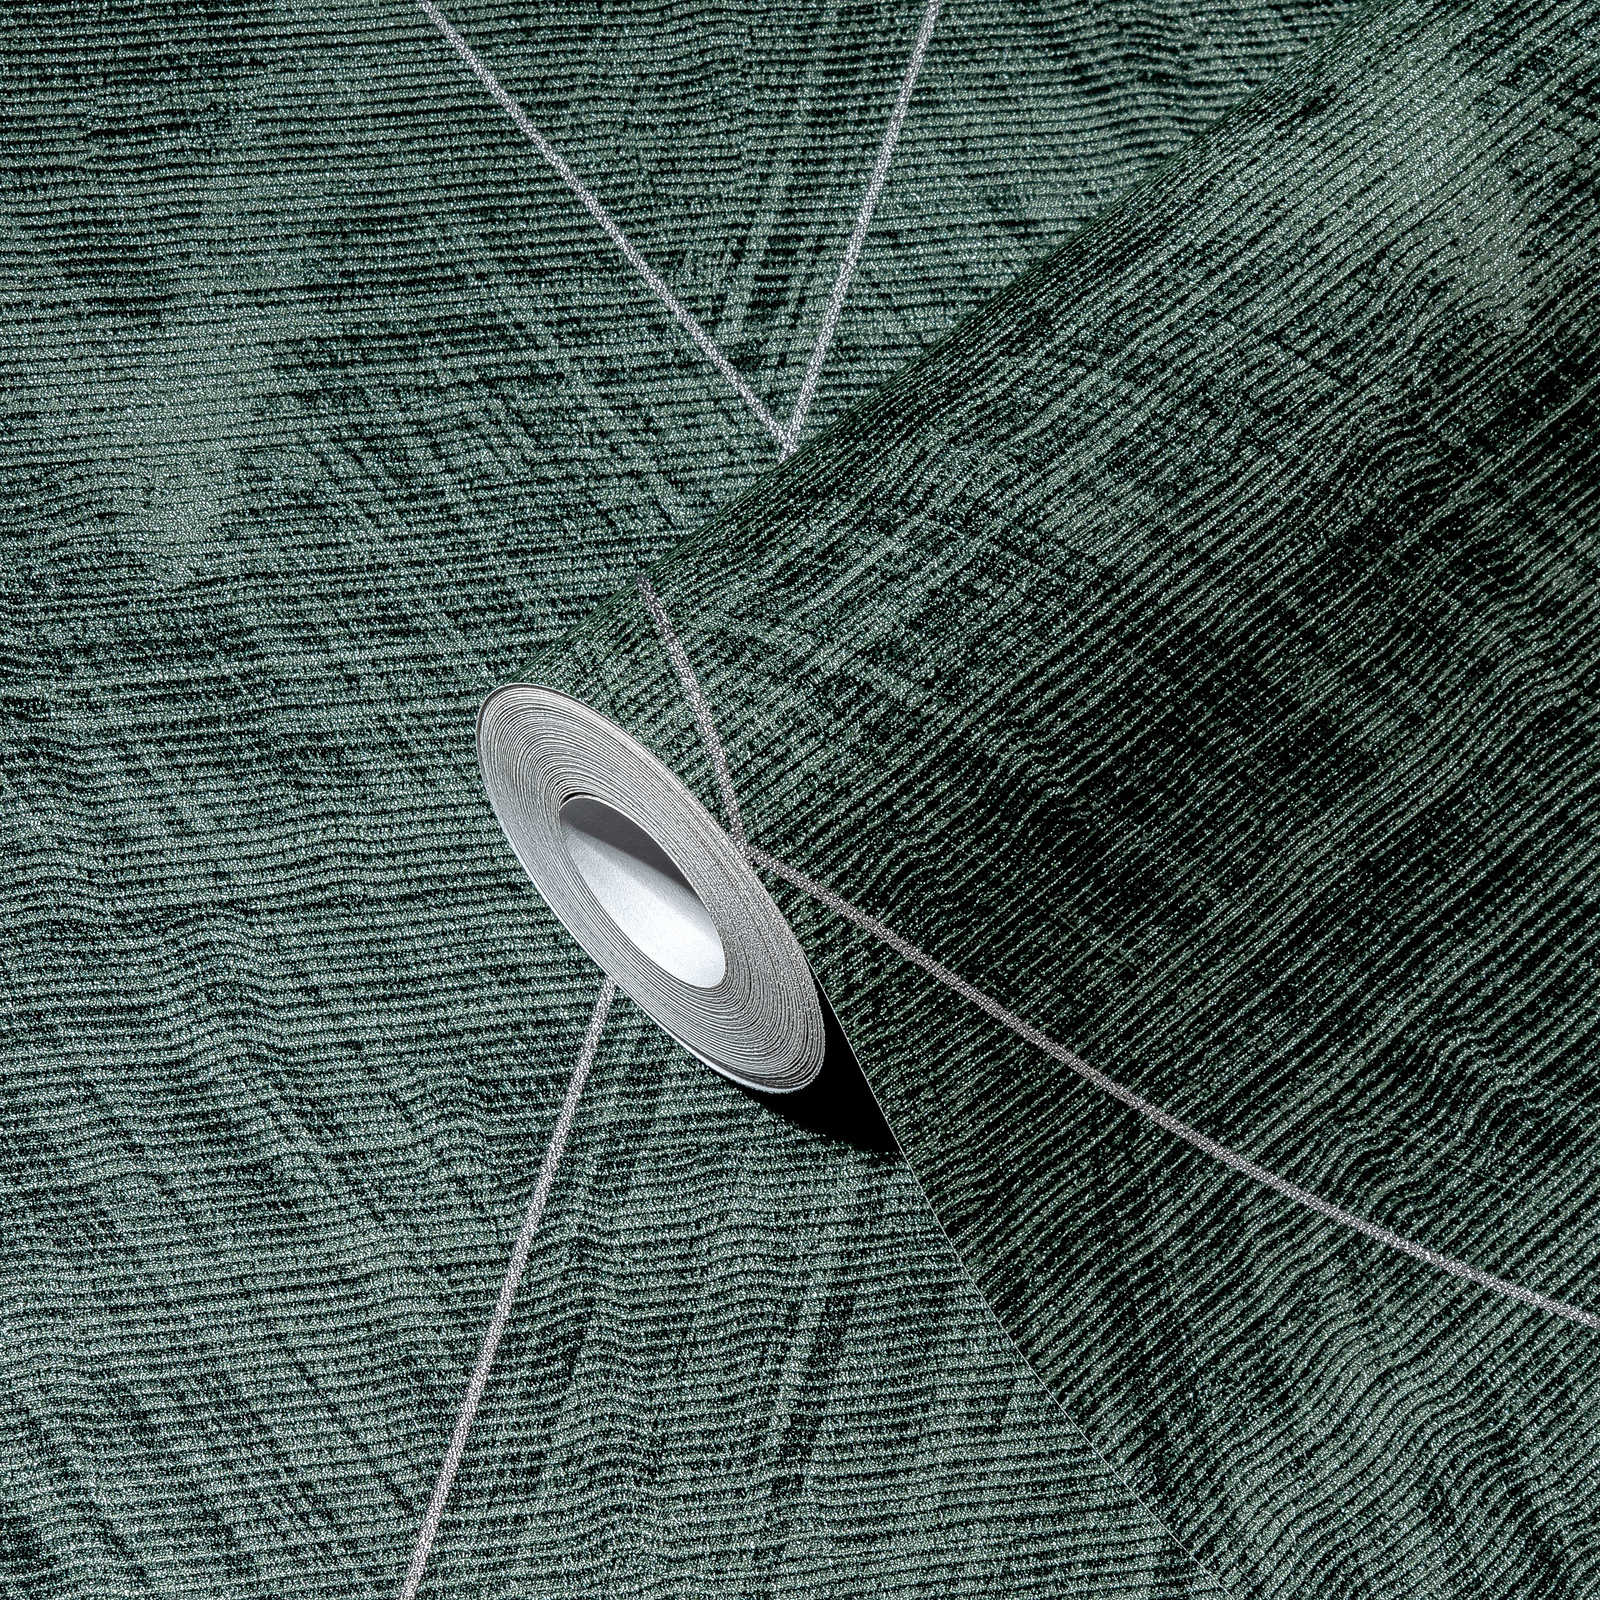             Diamantbehang met gevlekte textiellook - metallic, groen
        